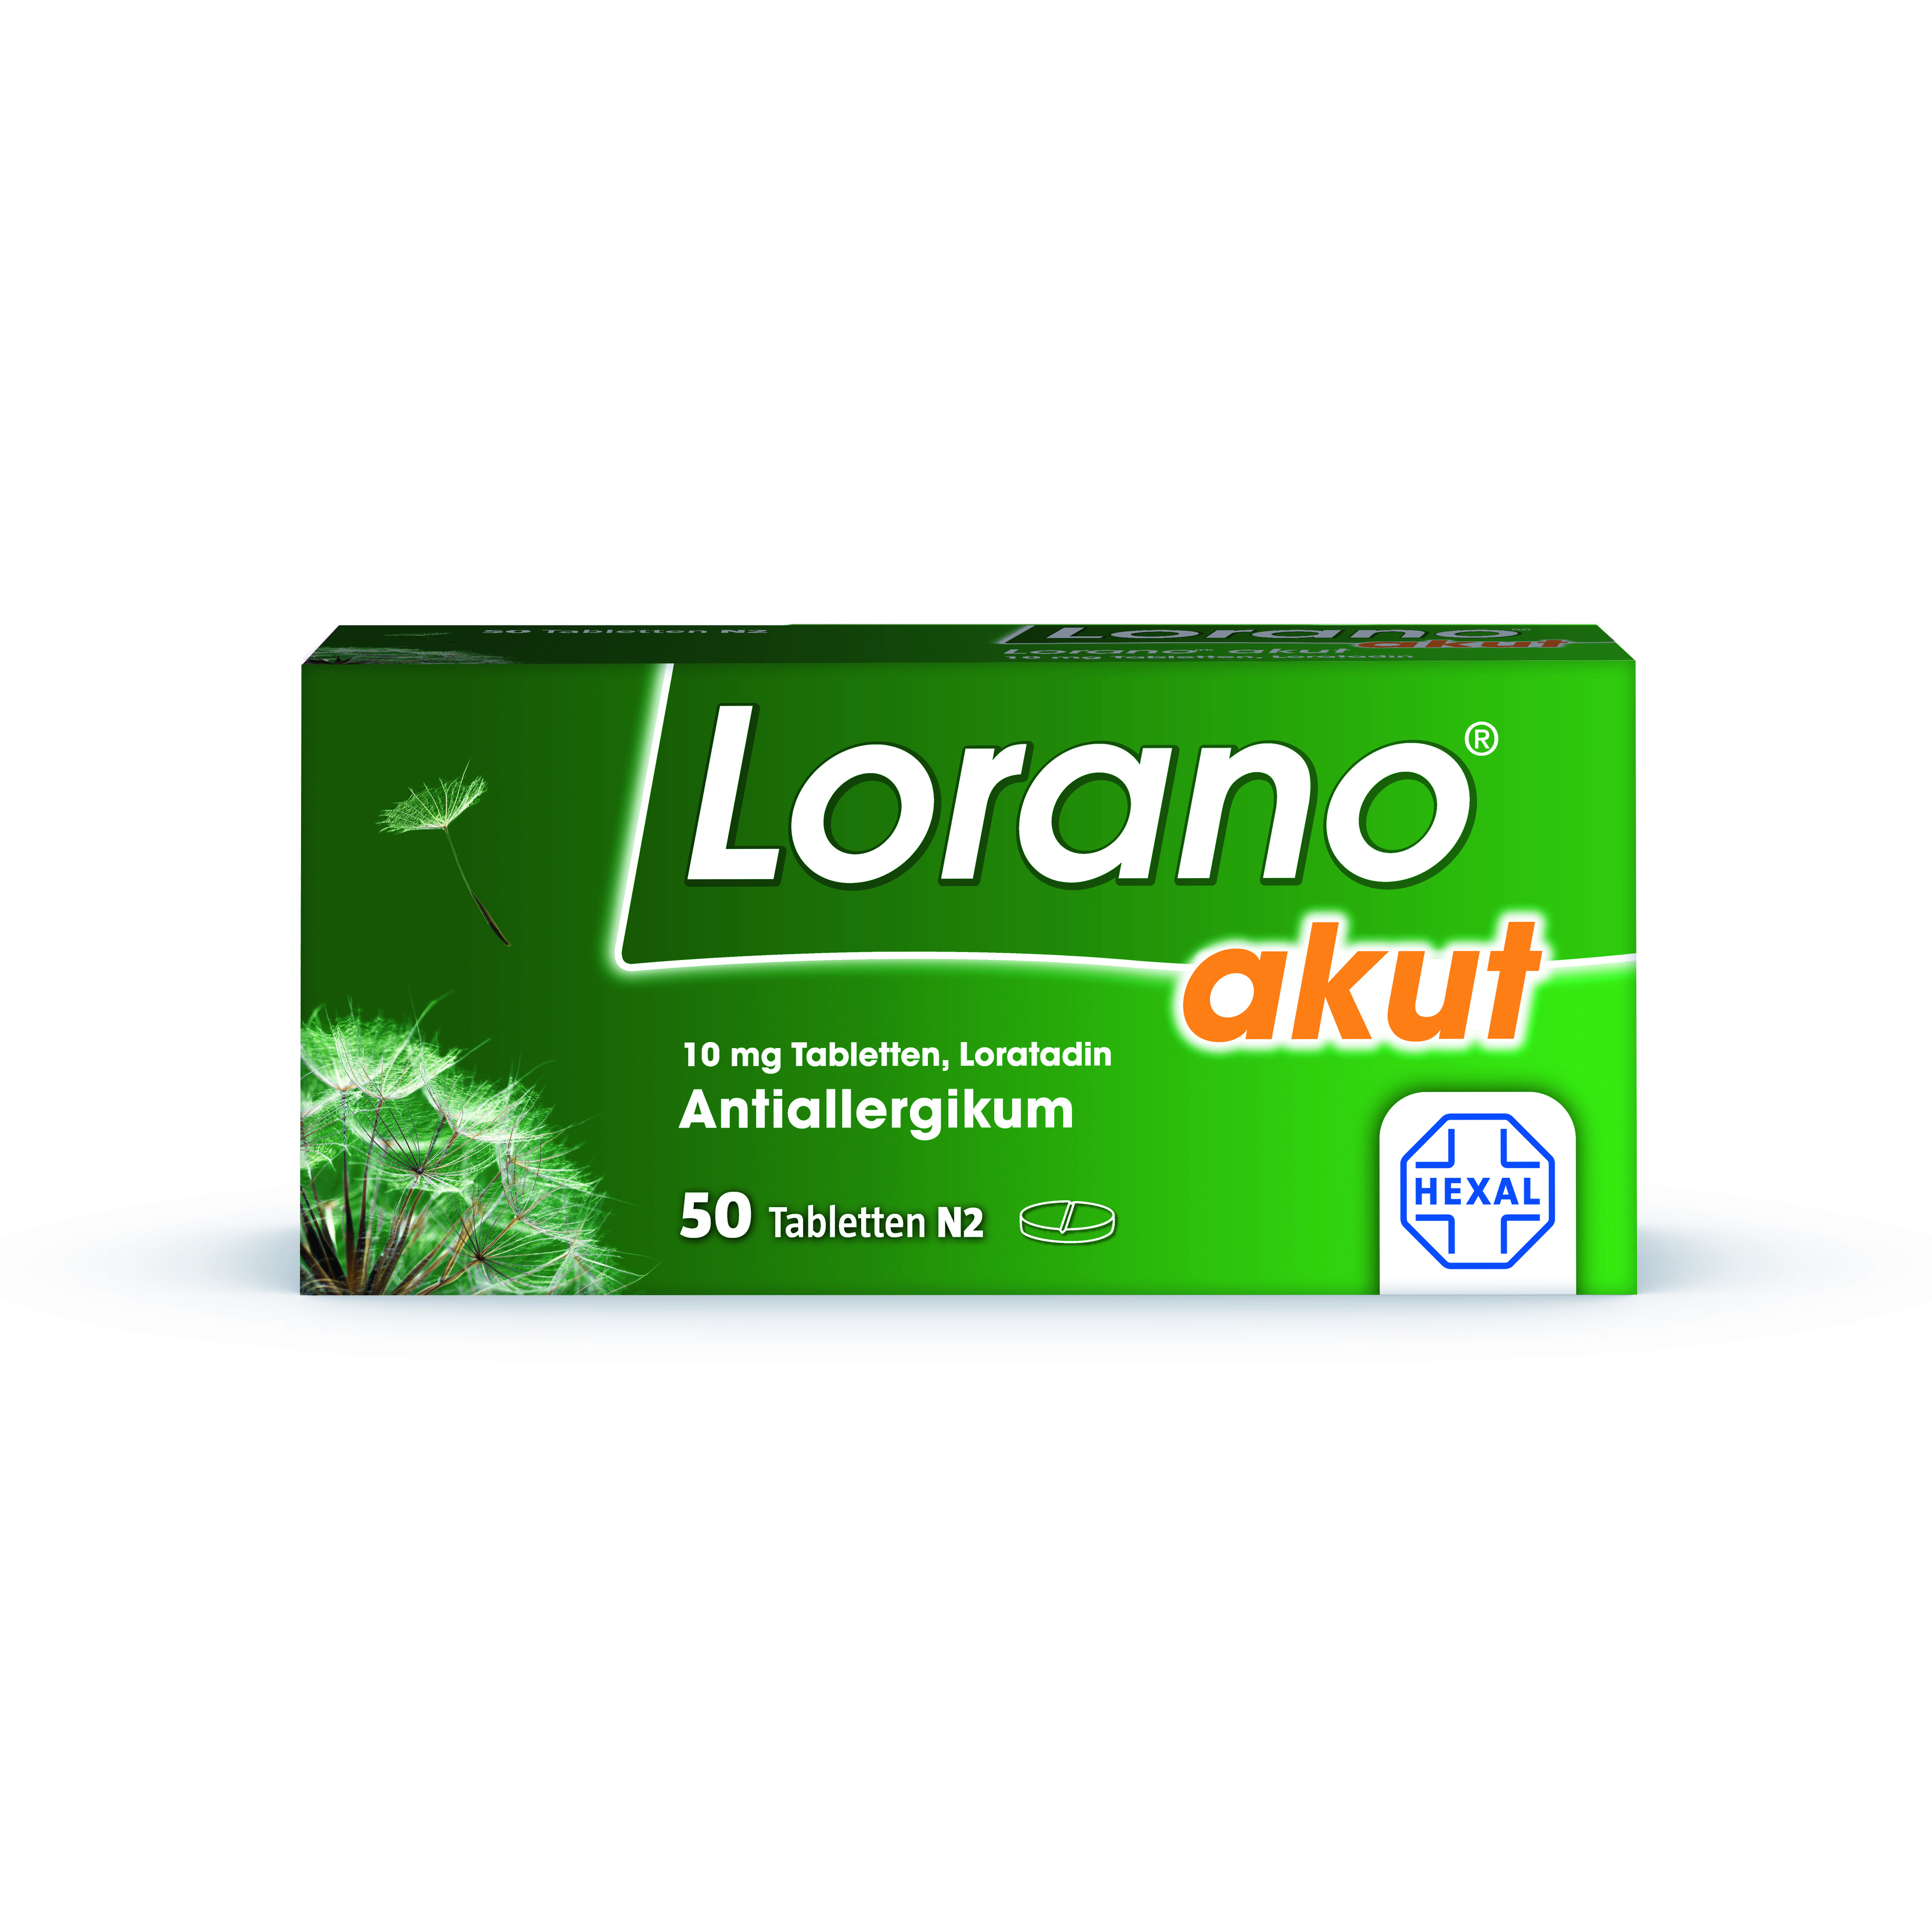 Lorano akut (50 Stk)